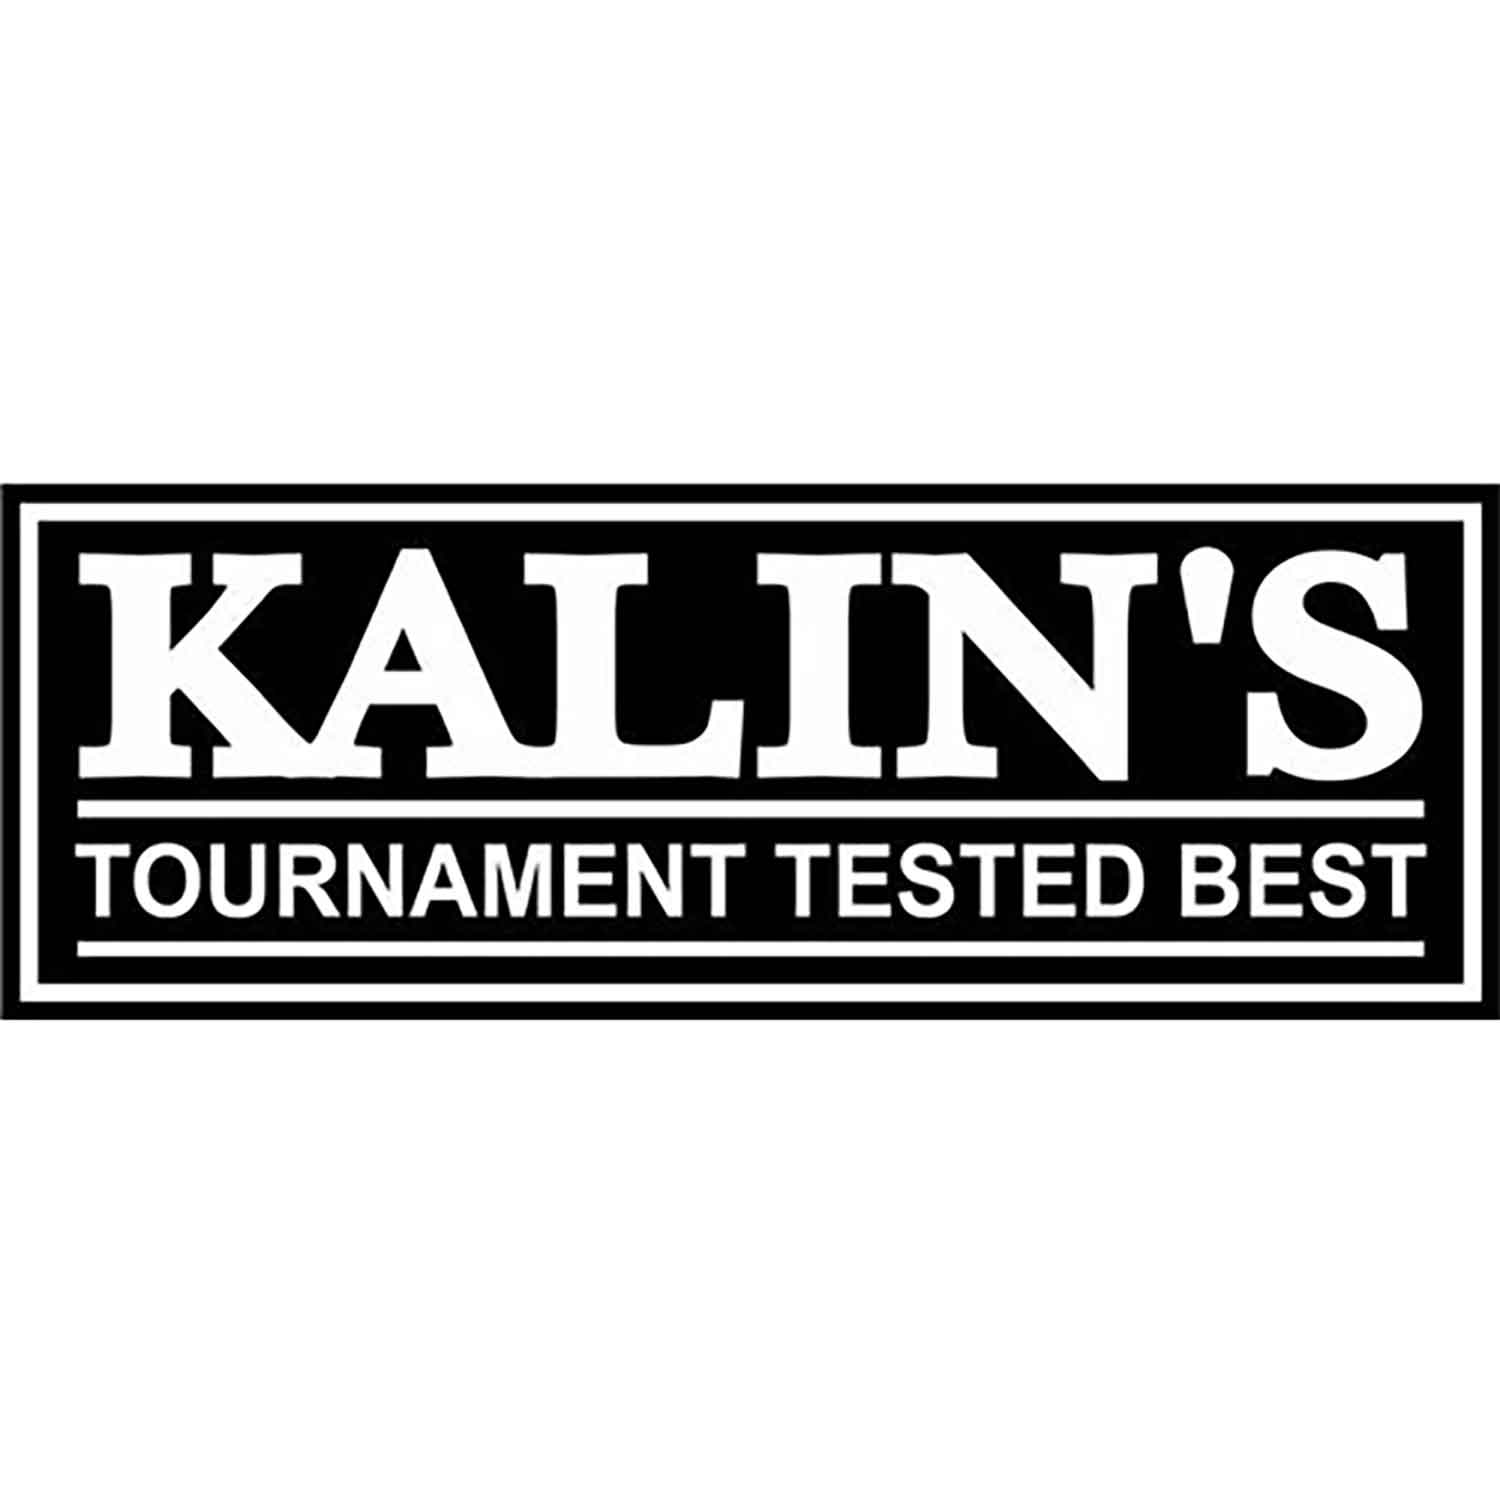 Kalin's